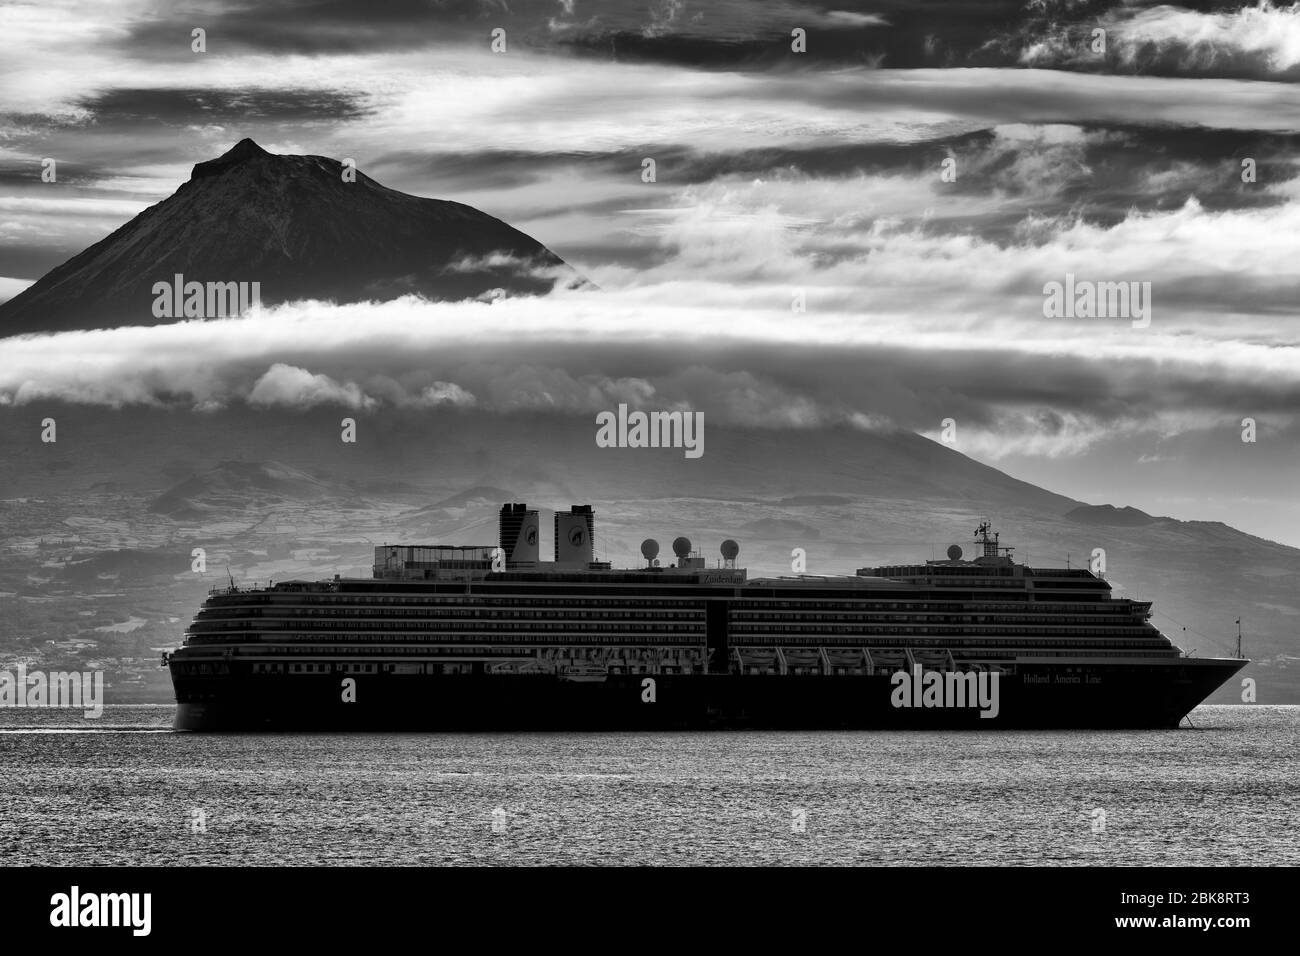 L'île de Pico Volcanoe & bateau de croisière, Horta, île de Faial, Açores, Portugal, Europe Banque D'Images